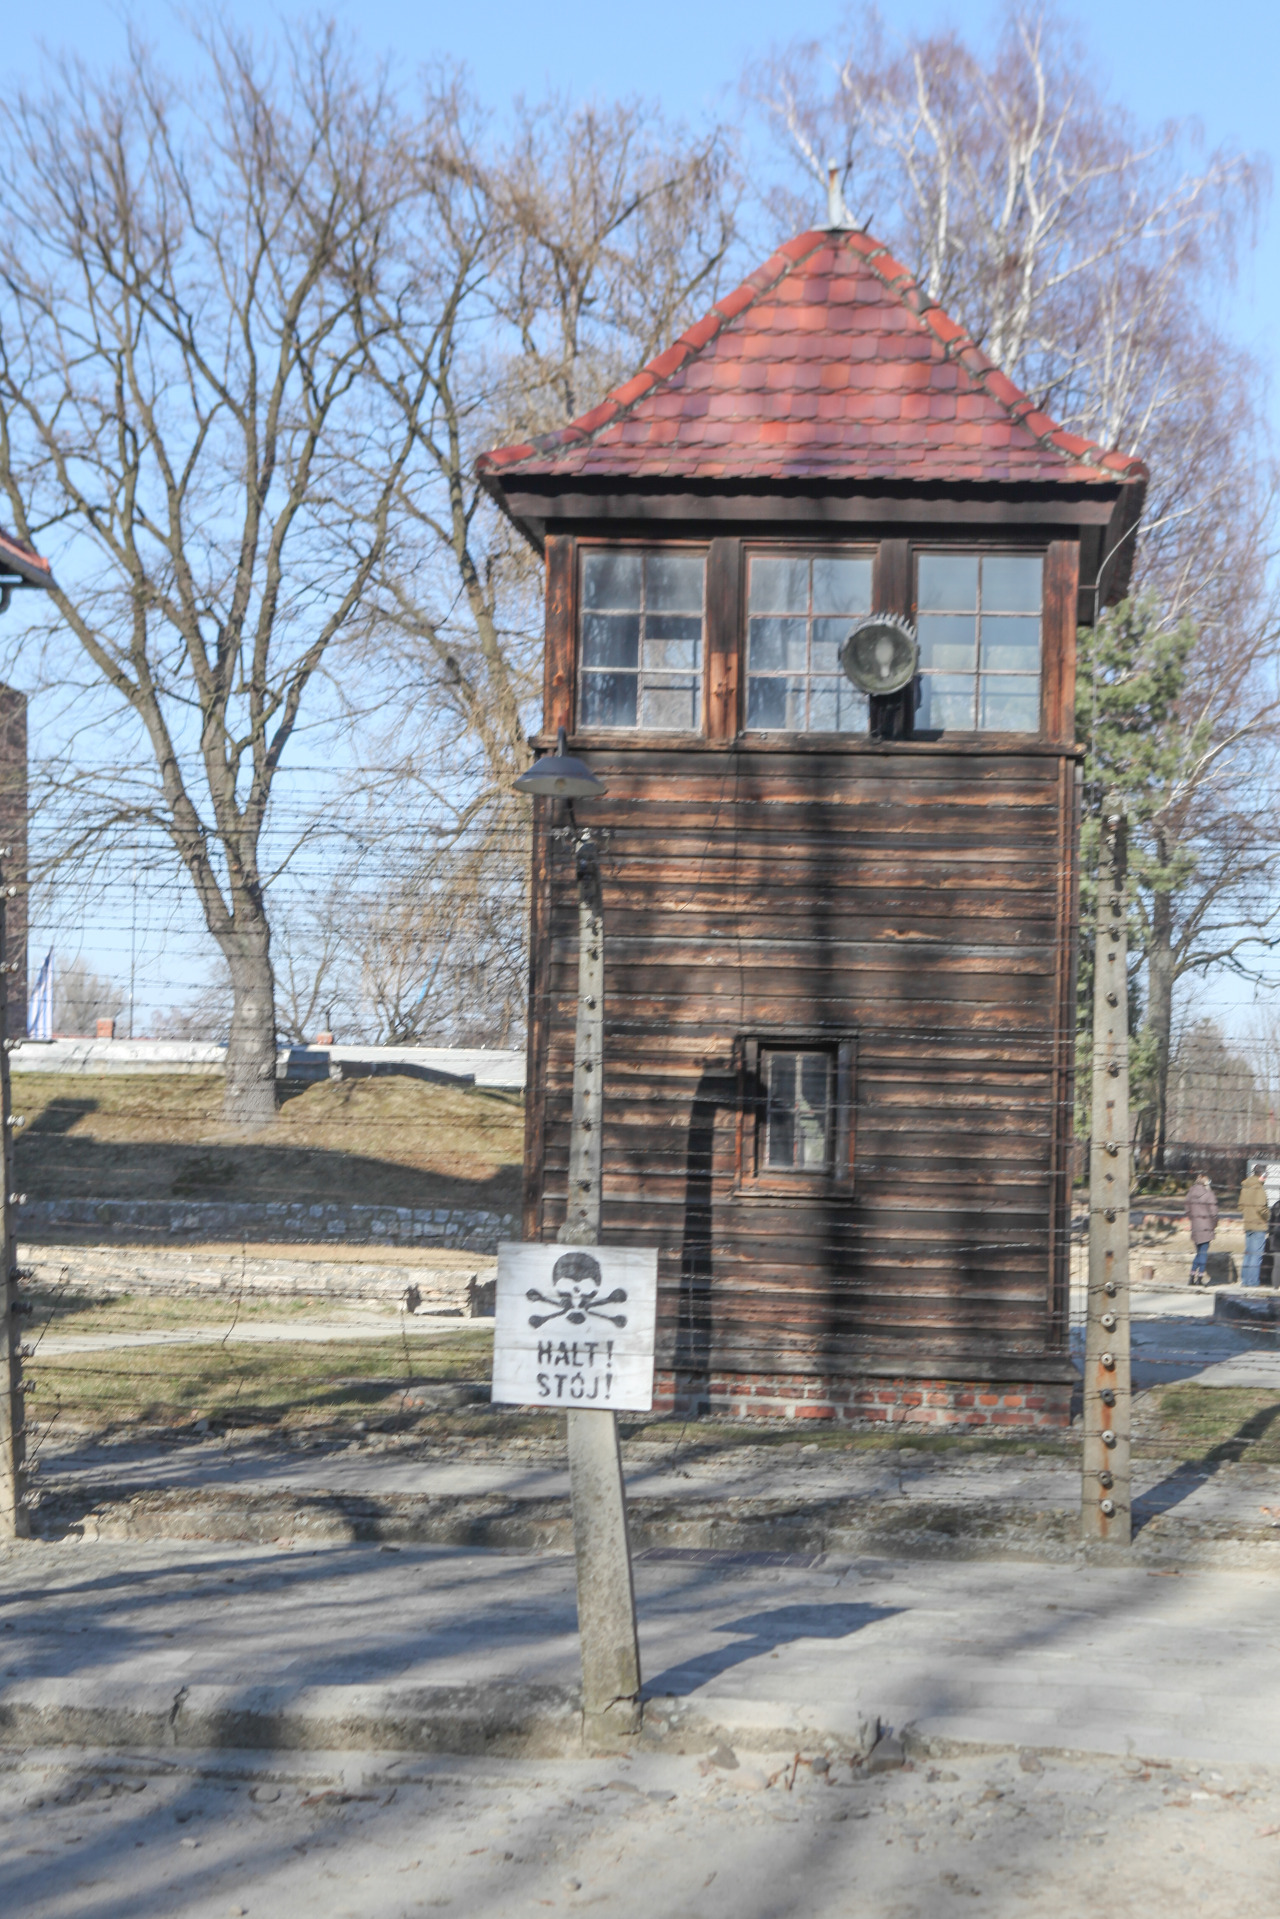 수용소 내부의 감시탑은 긴 세월이 흐른 지금도 간담을 서늘하게 한다.